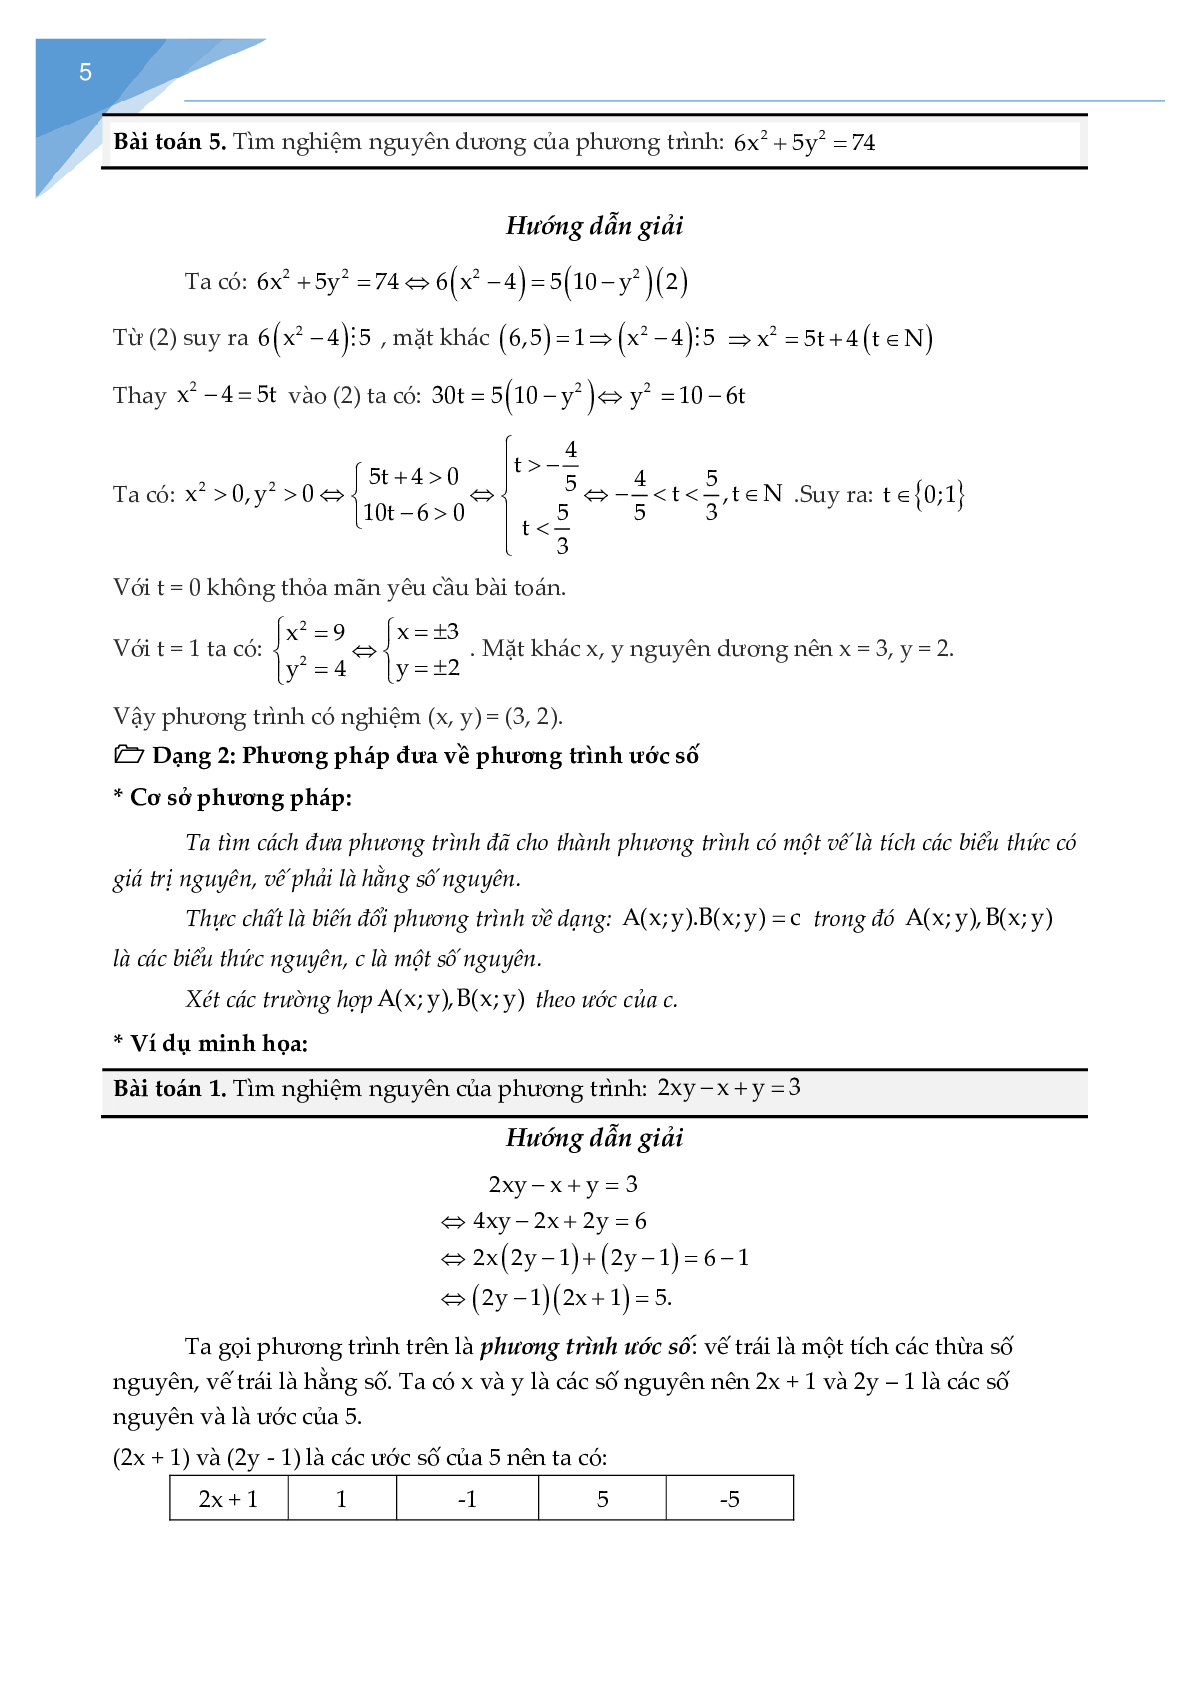 Chuyên đề phương trình nghiệm nguyên (trang 4)